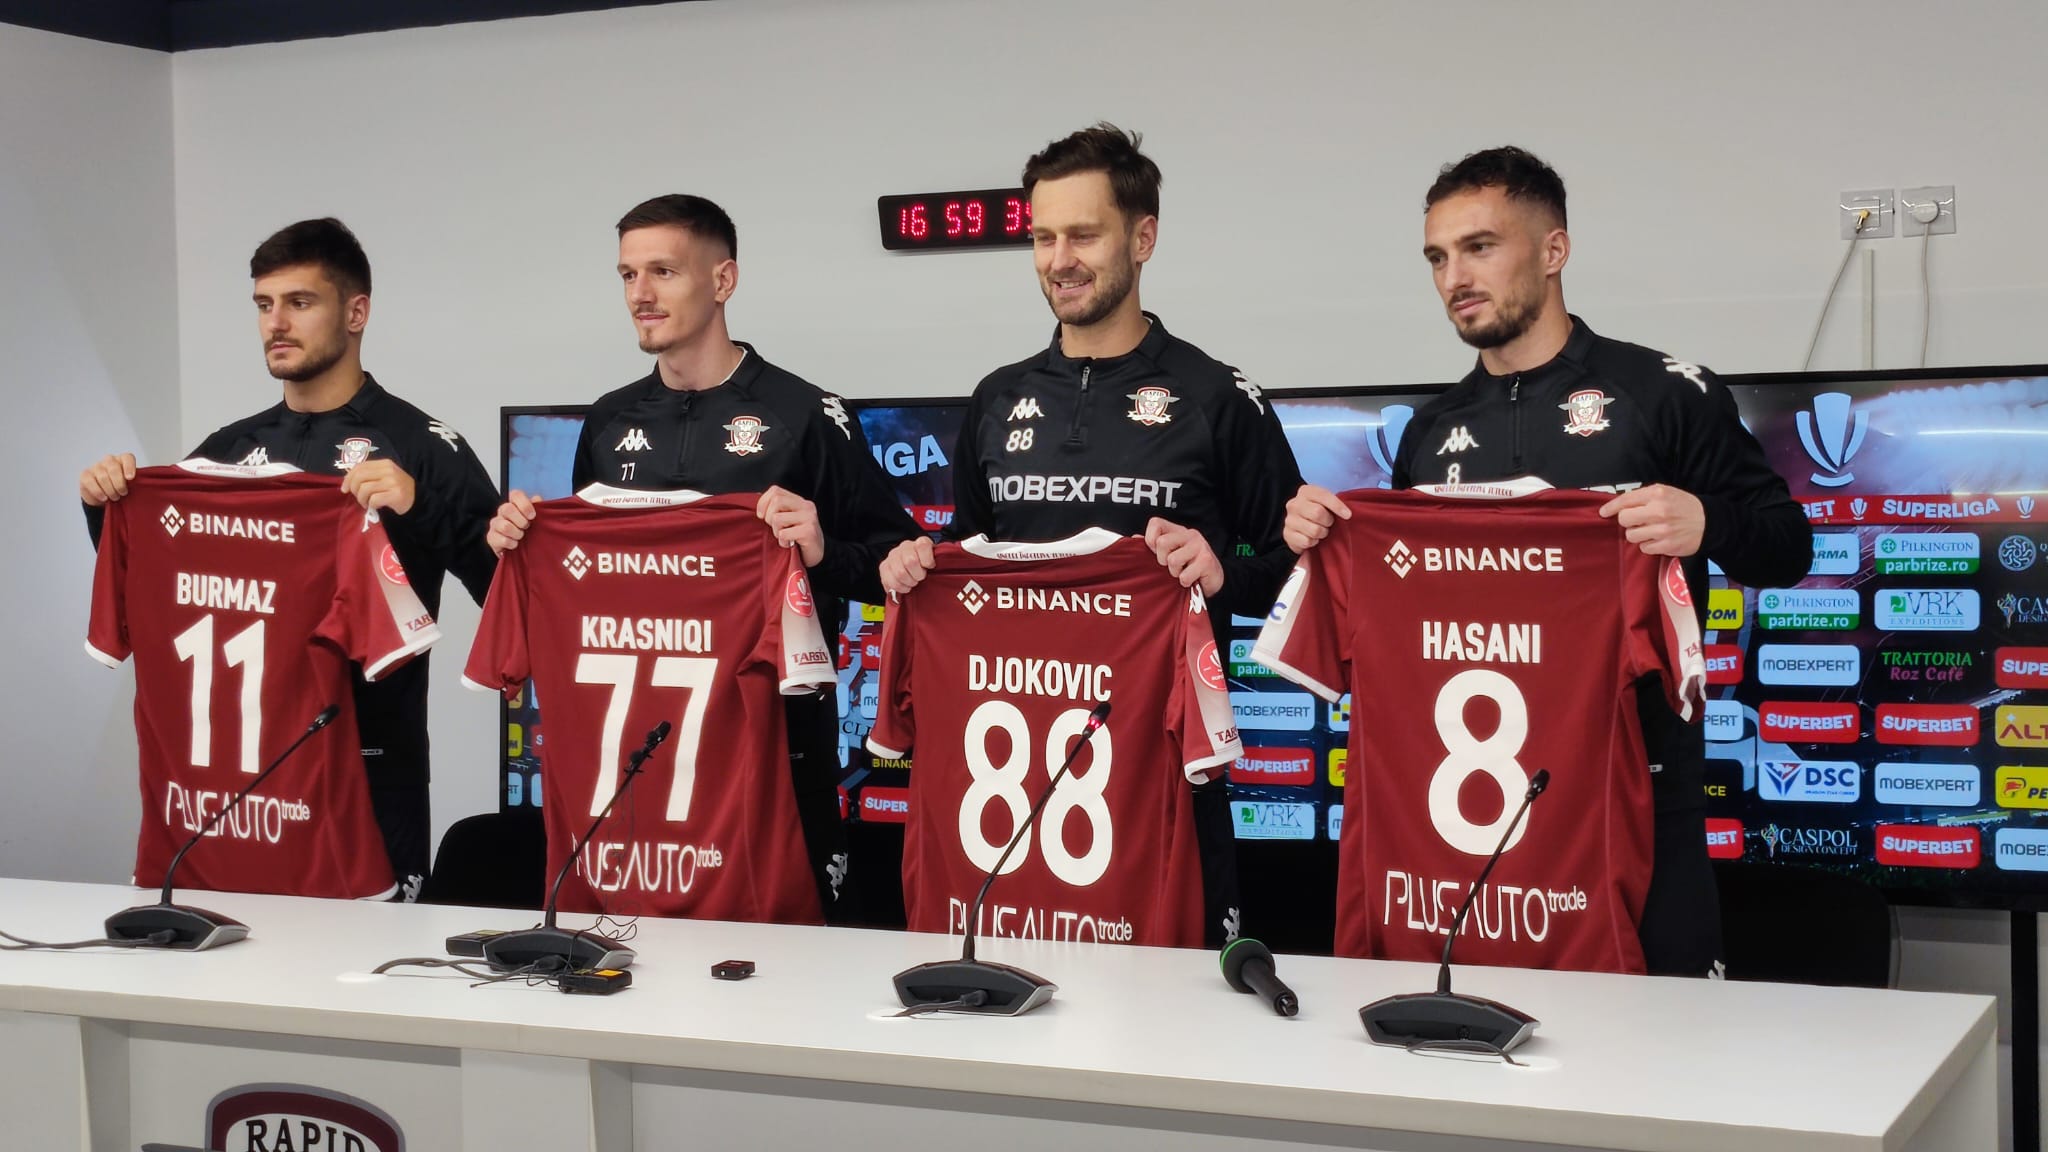 Rapid și-a prezentat cele patru achiziții: ce au declarat Djokovic, Hasani, Krasniqi și Burmaz